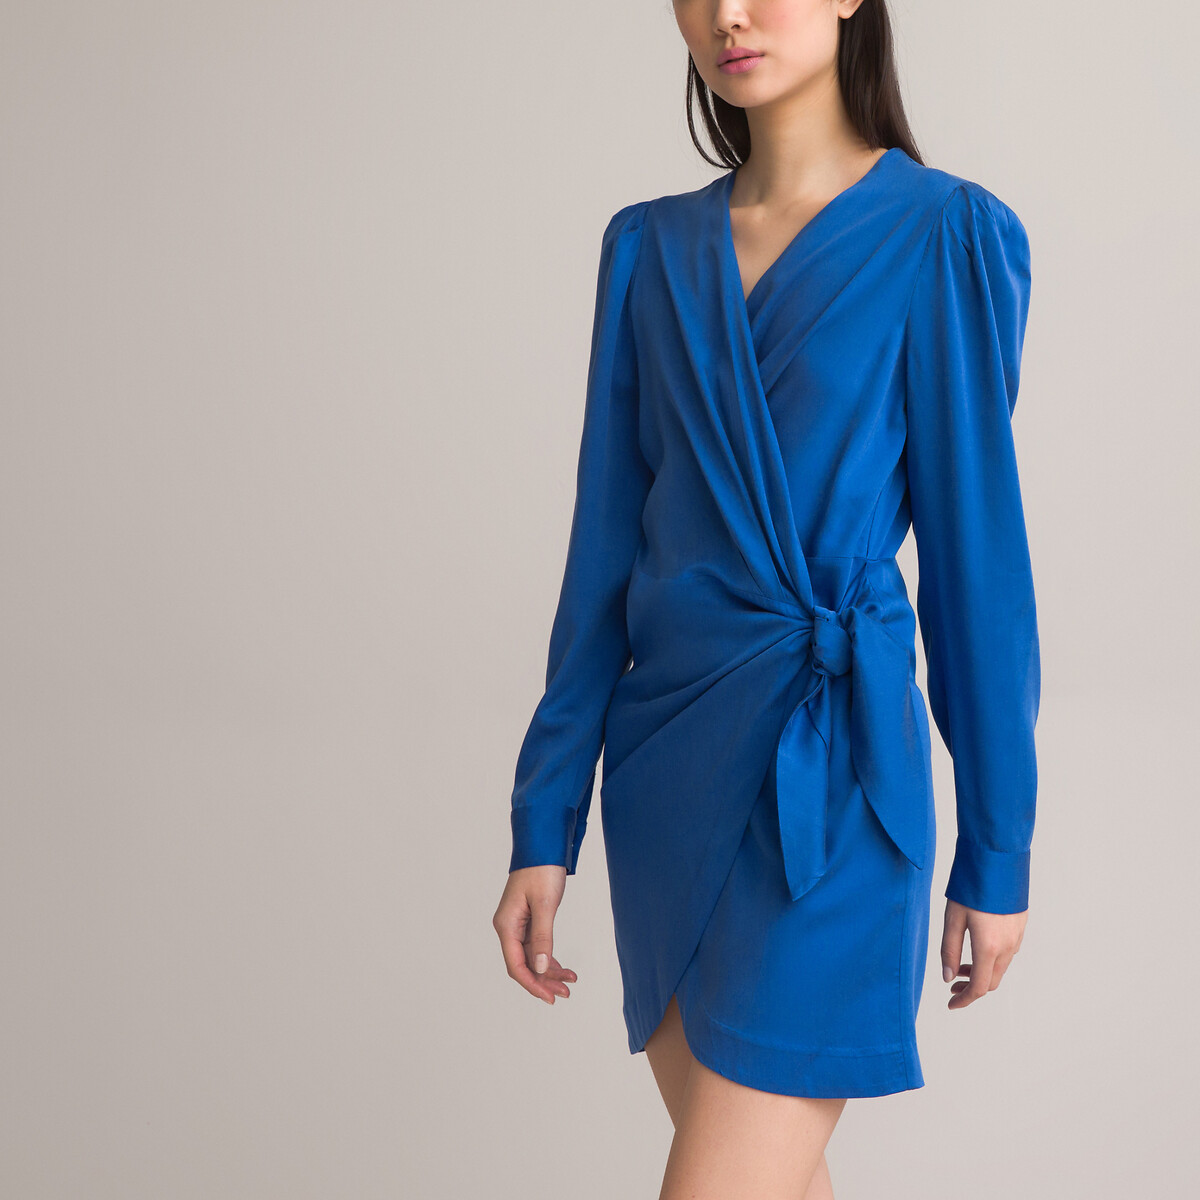 Платье короткое с запахом длинные рукава 44 синий платье короткое с запахом и принтом короткие рукава l синий